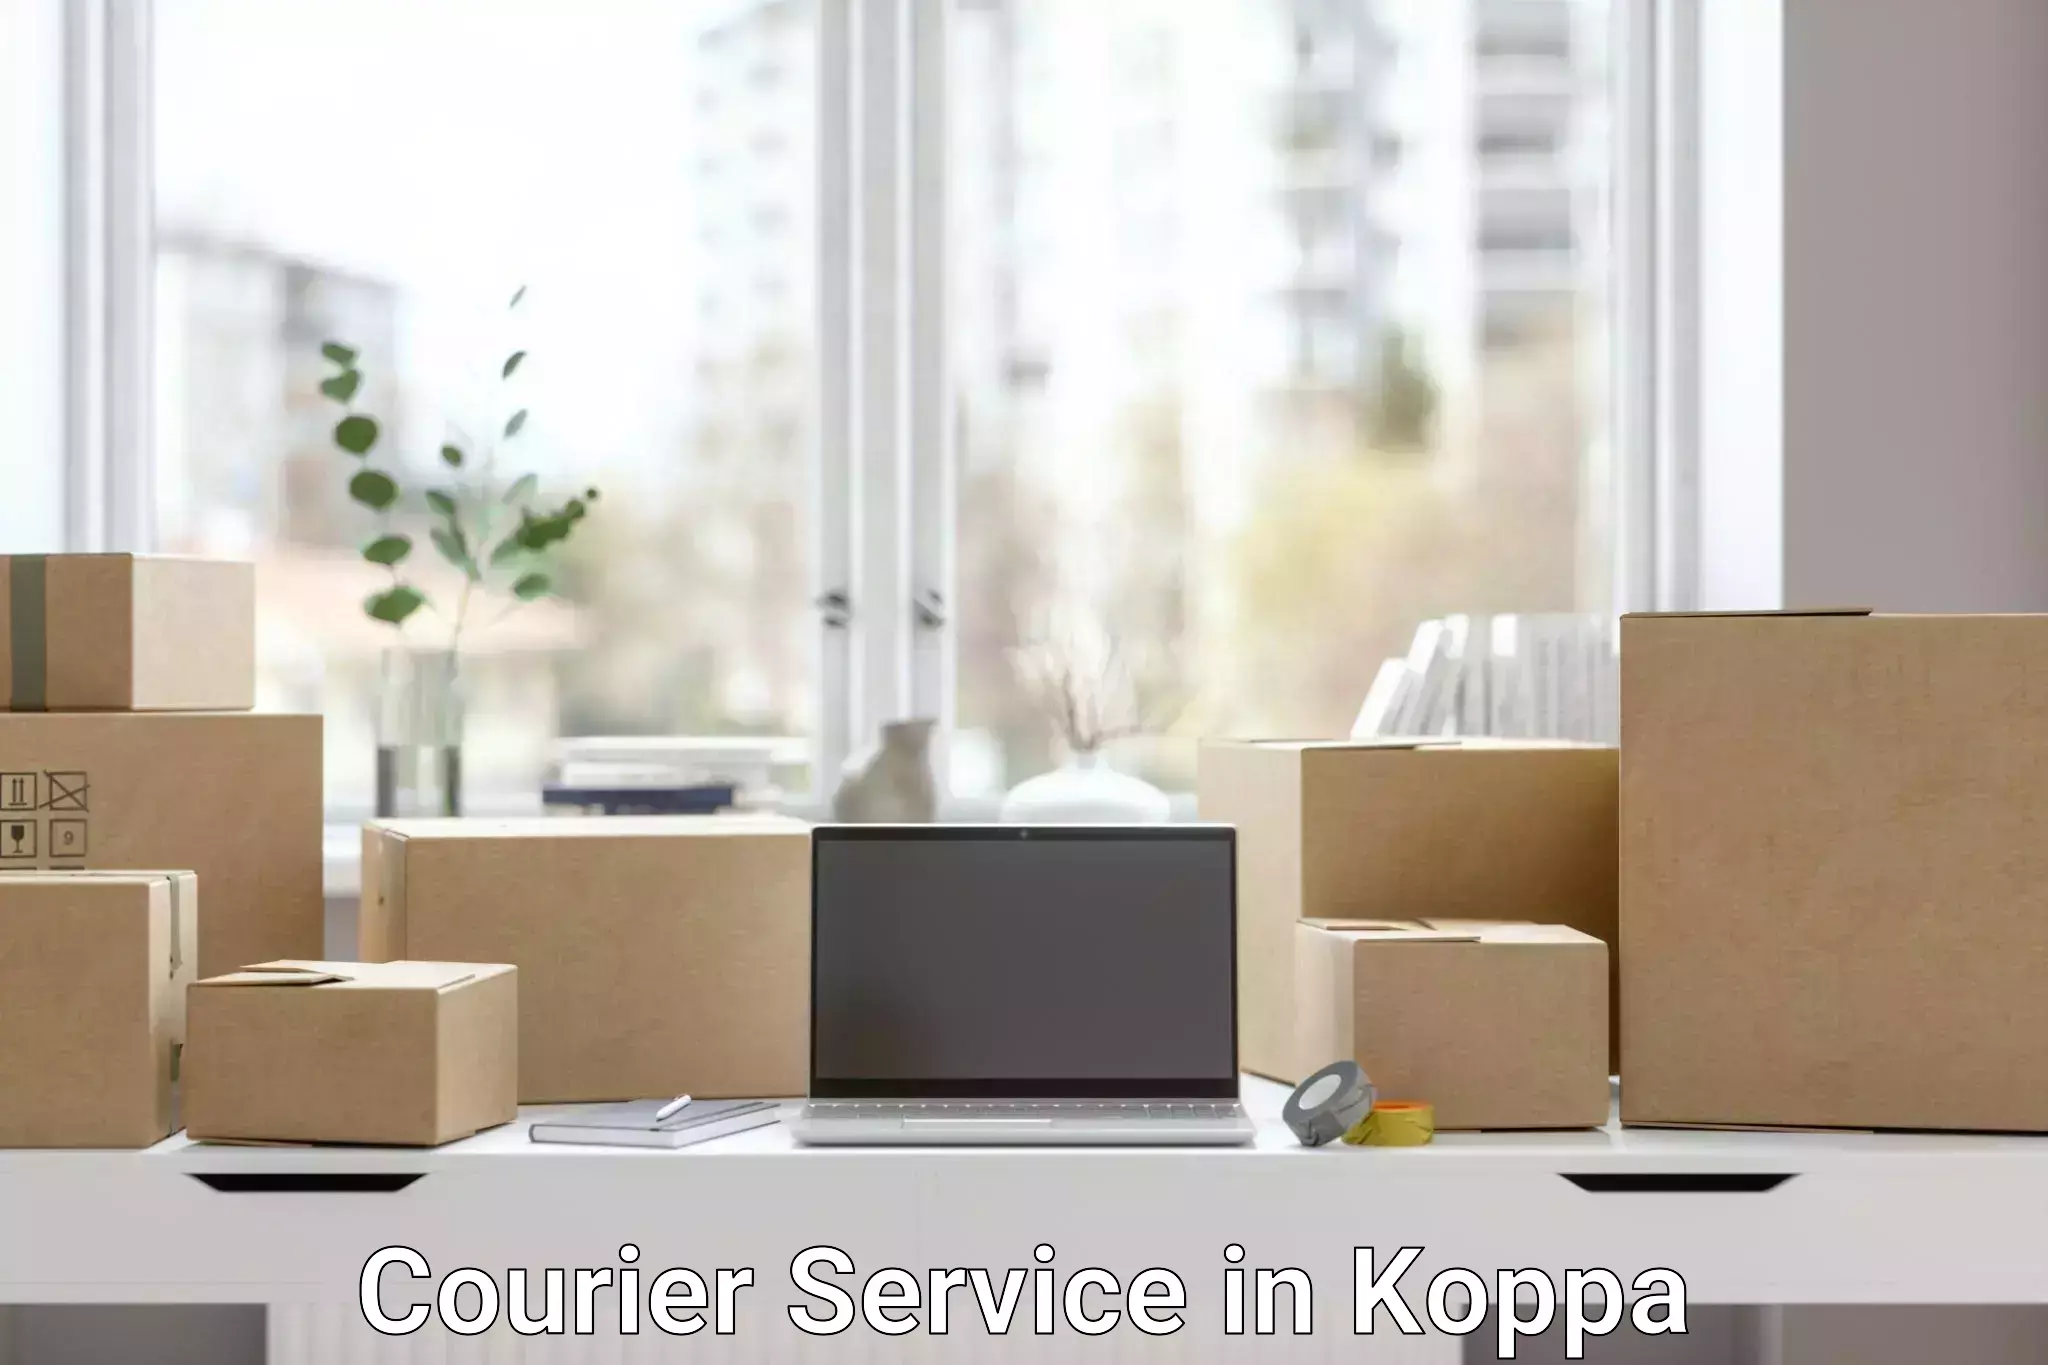 Smart courier technologies in Koppa